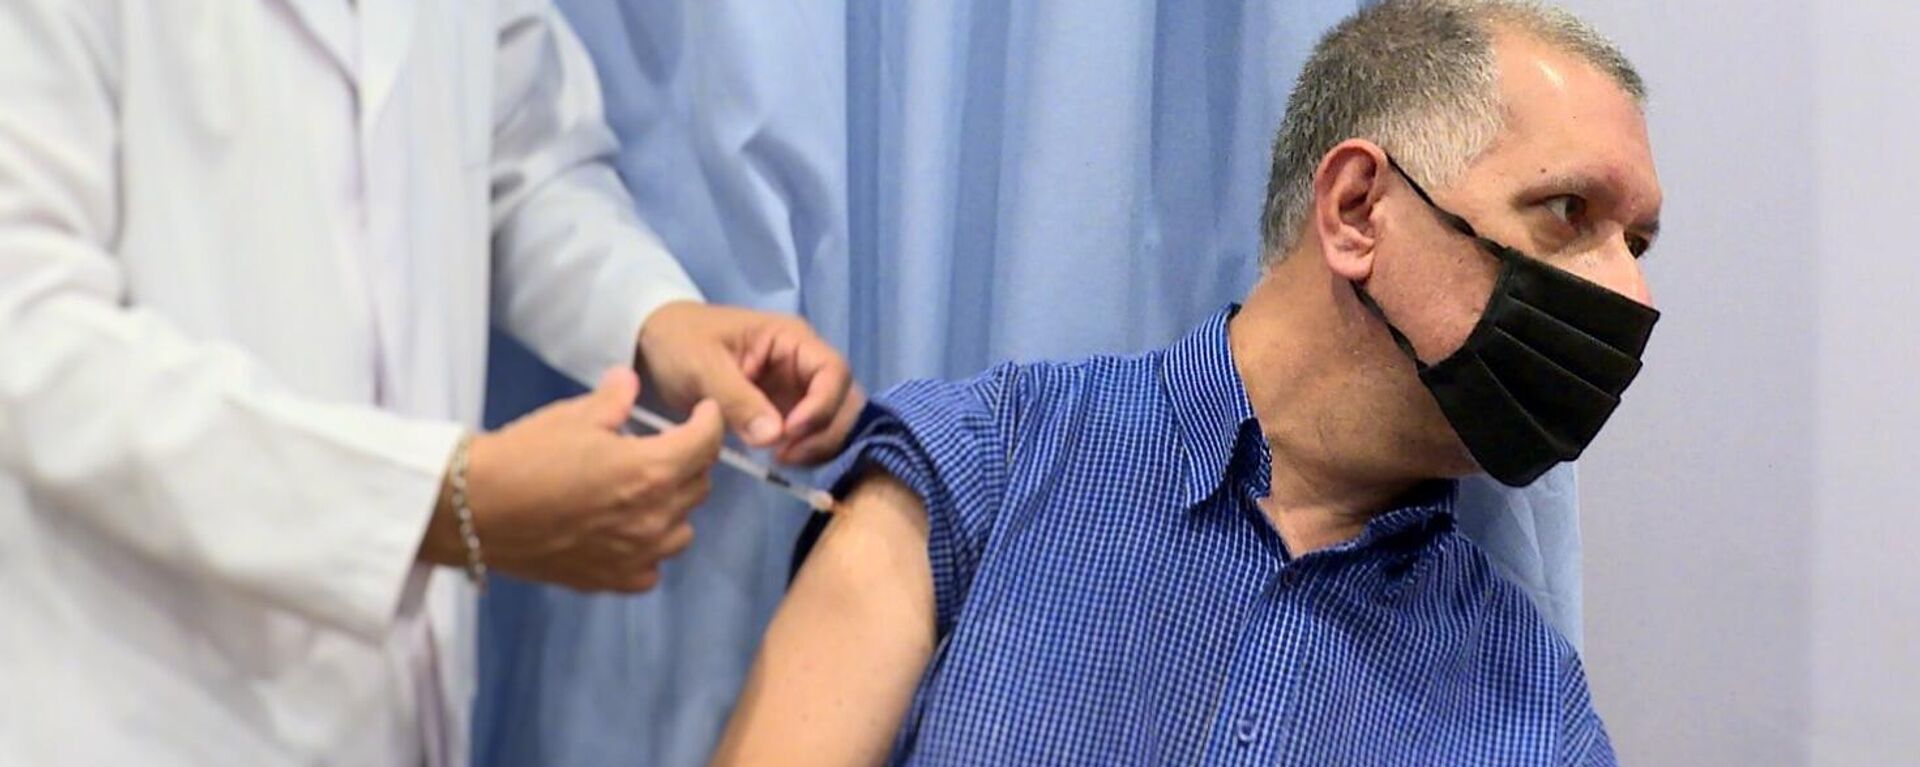 Humberto Tory, profesor universitario, recibe la primera dosis de una vacuna contra el COVID-19 en Caracas - Sputnik Mundo, 1920, 31.03.2022